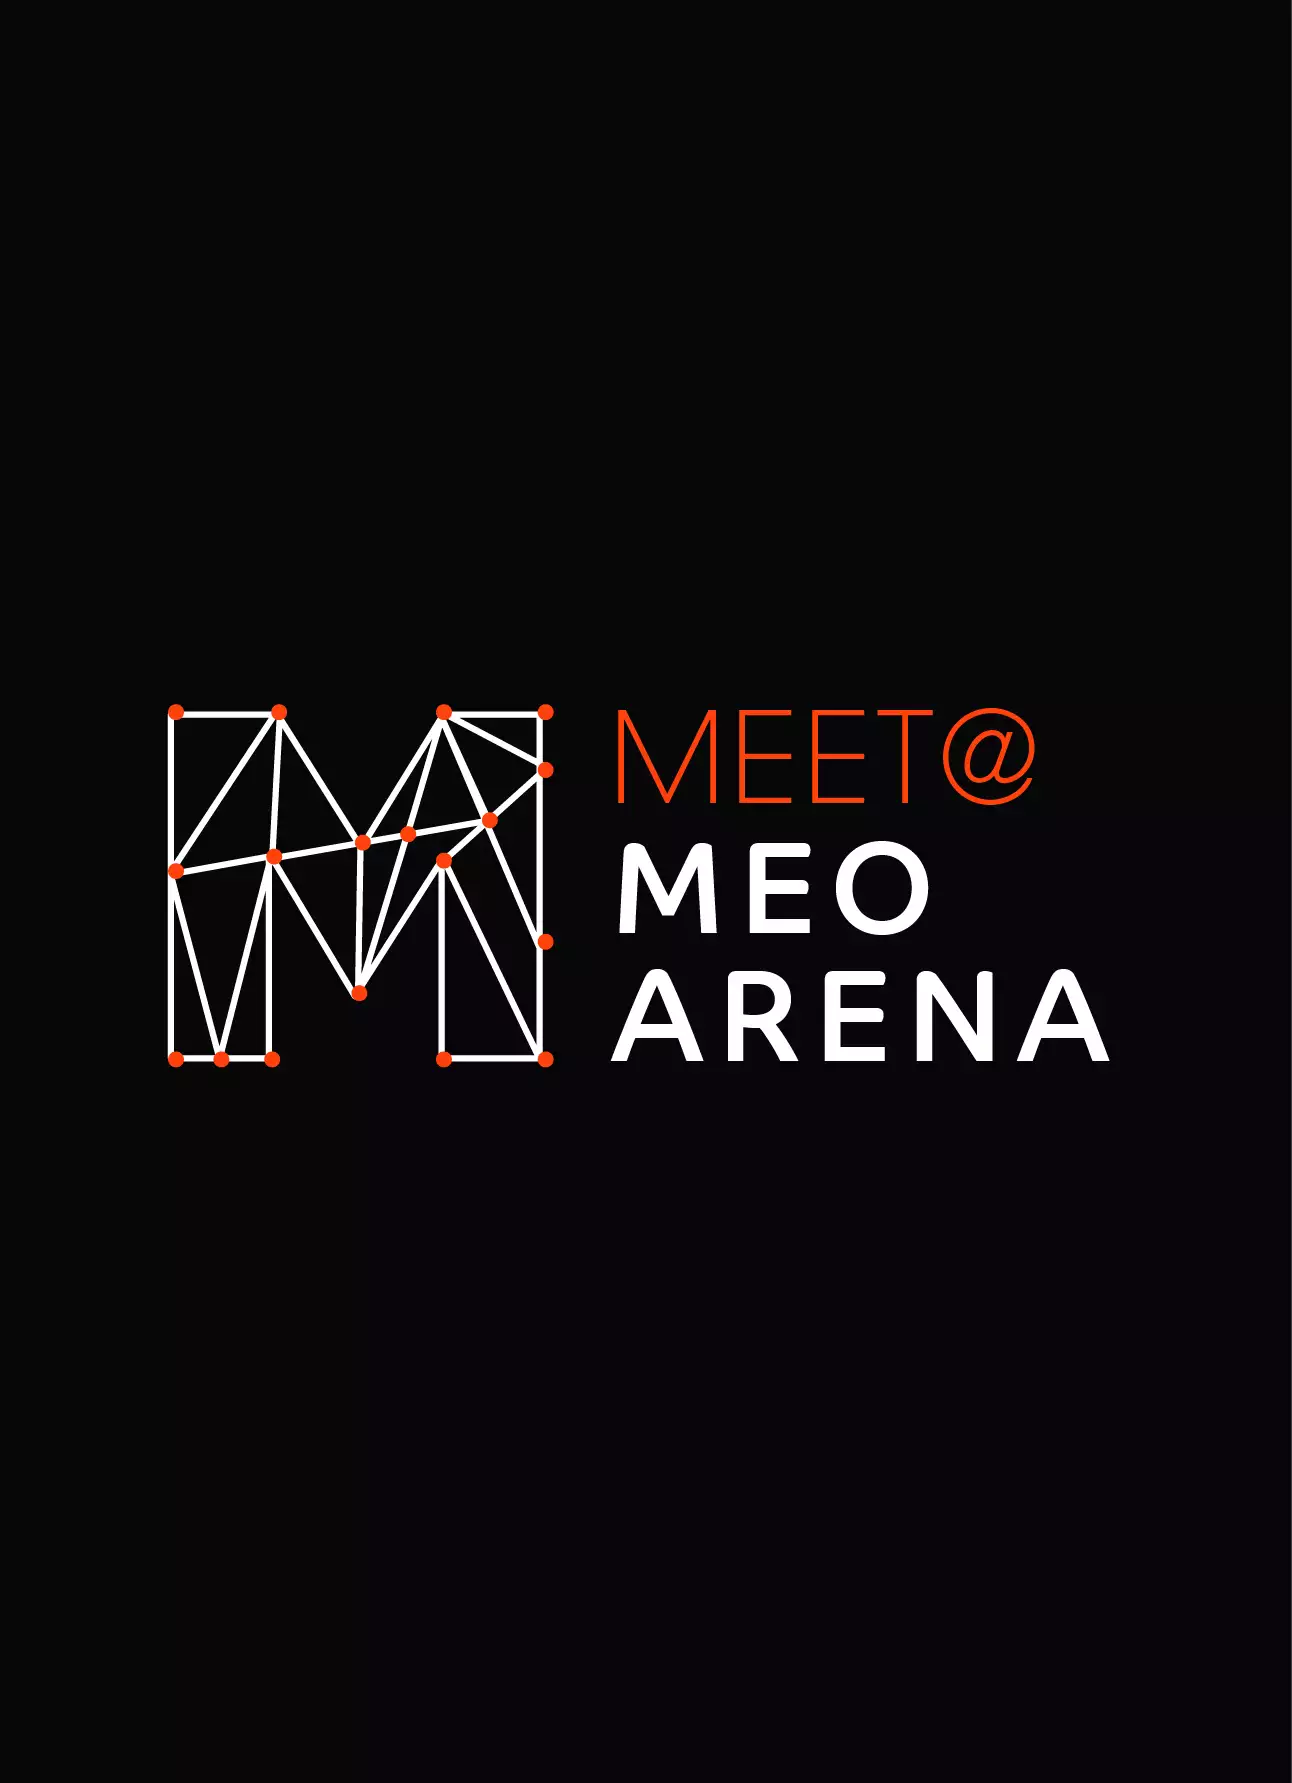 MEET@MEO ARENA